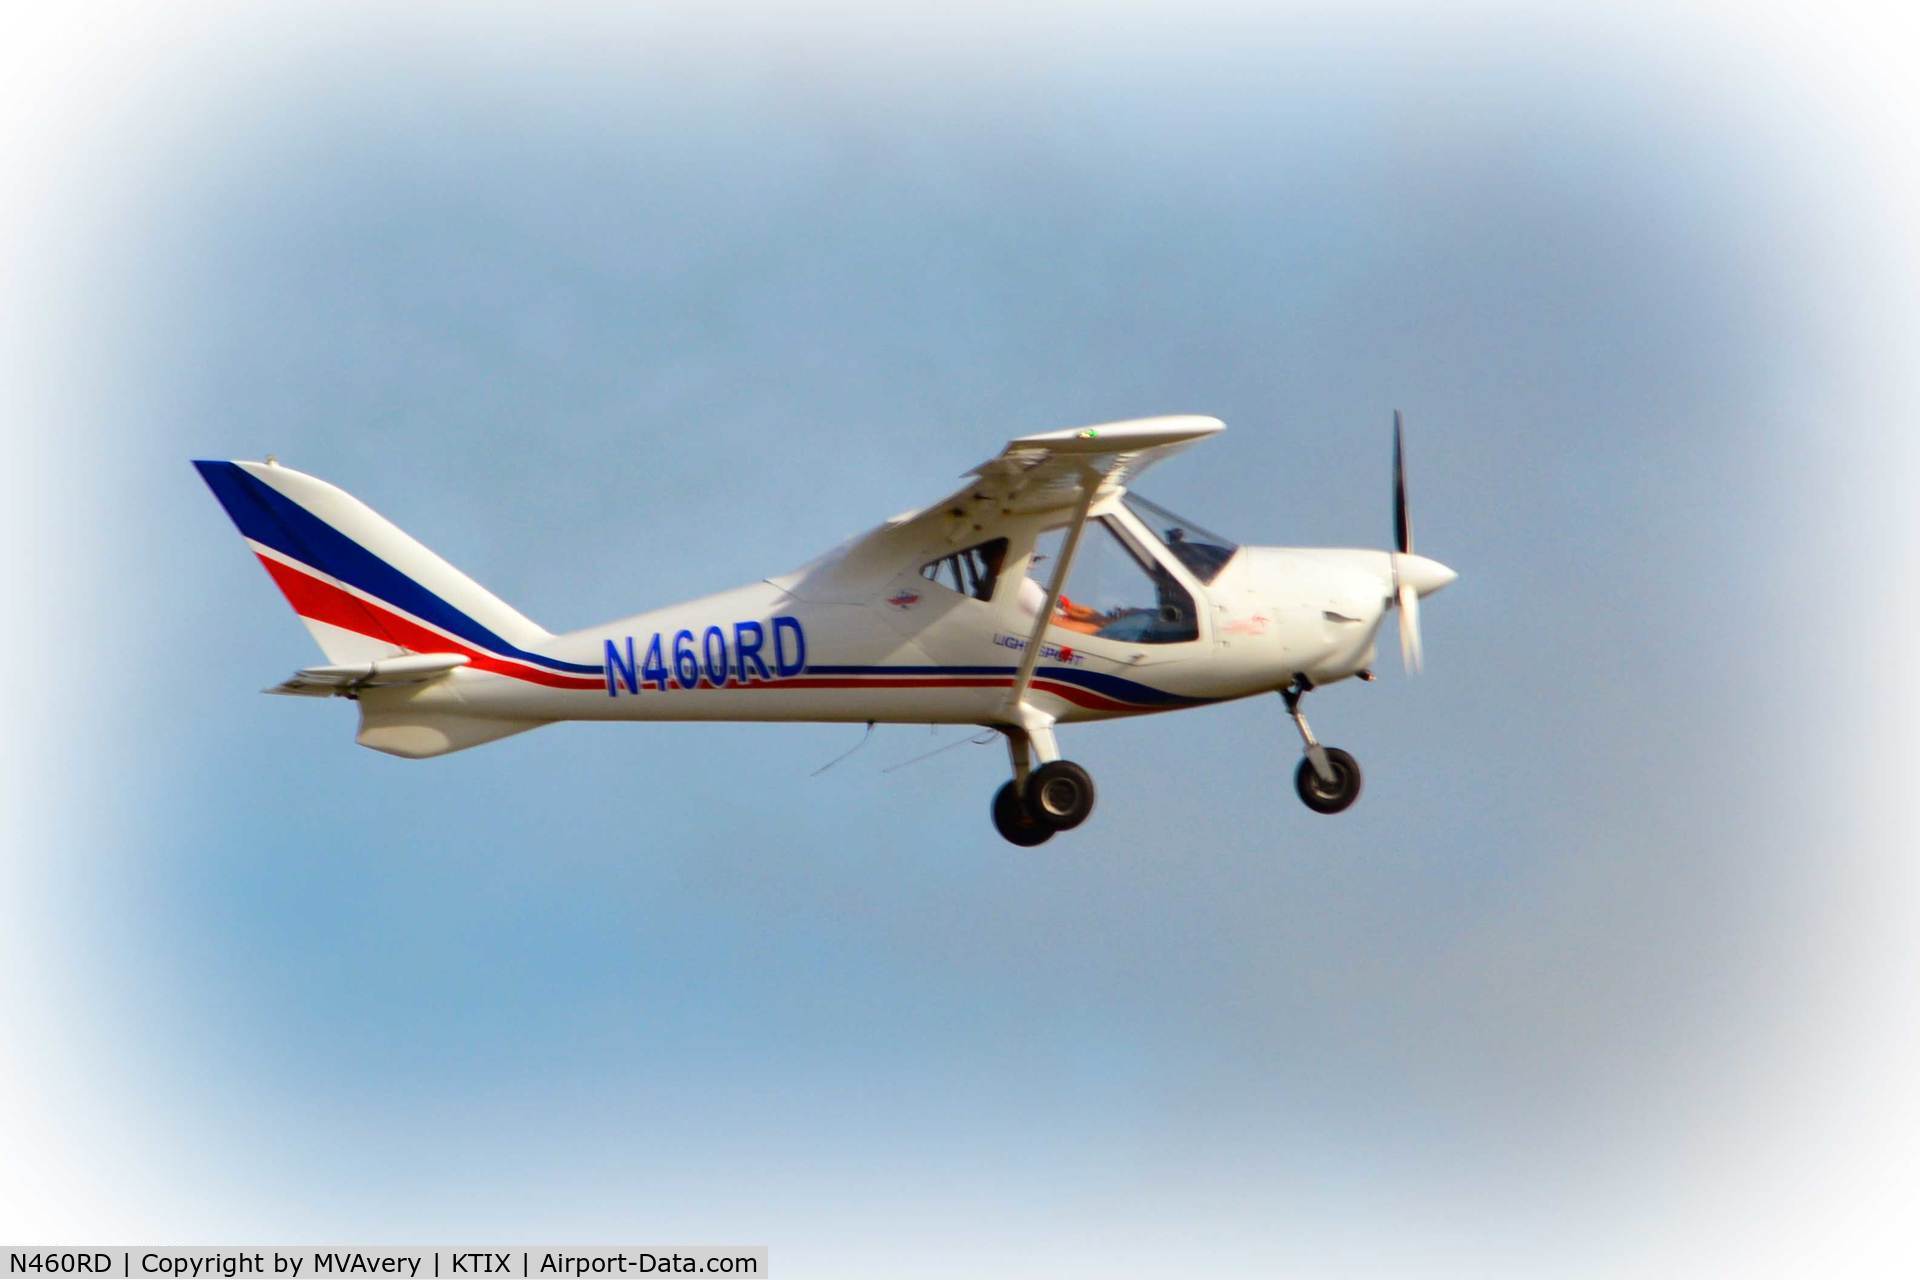 N460RD, 2008 Flyitalia Srl MD3 RIDER C/N 04608, 2015 Tico Air Show